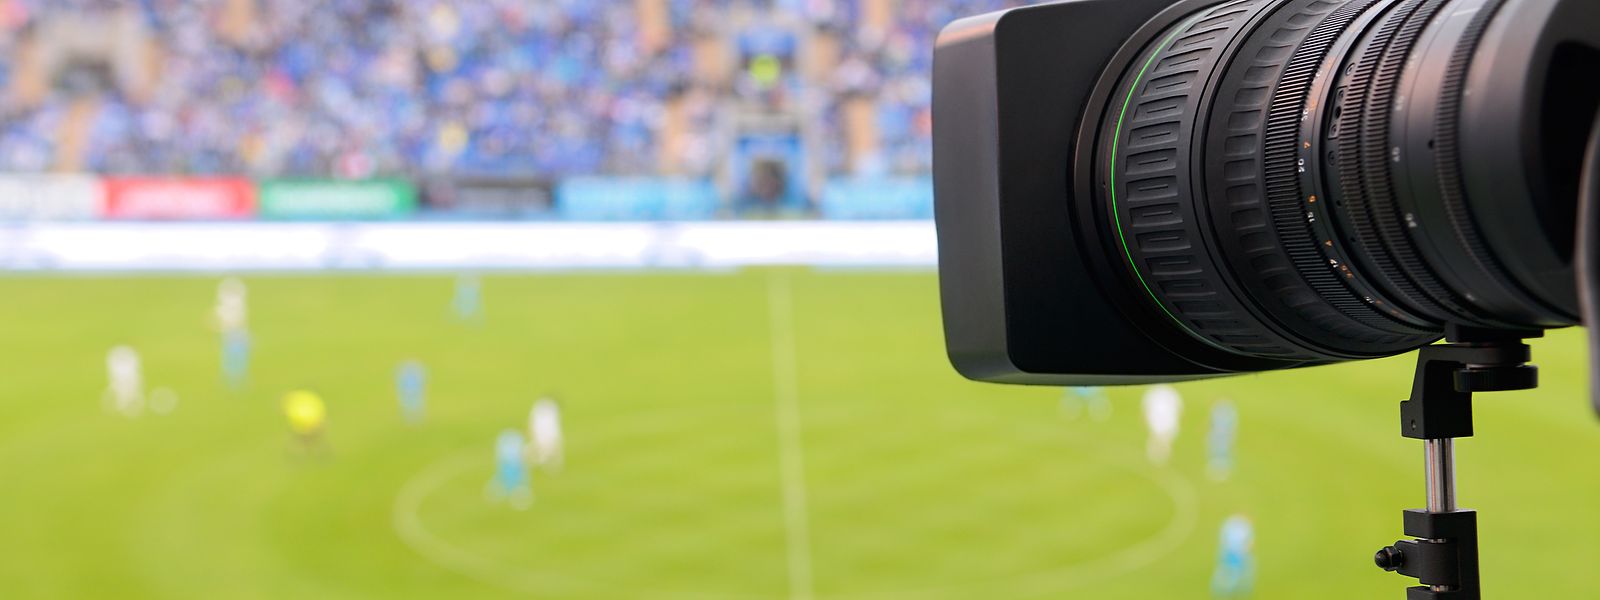 Les 32 clubs de l'élite seront équipés d'une caméra. En cas de relégation, le matériel restera installée dans le stade.